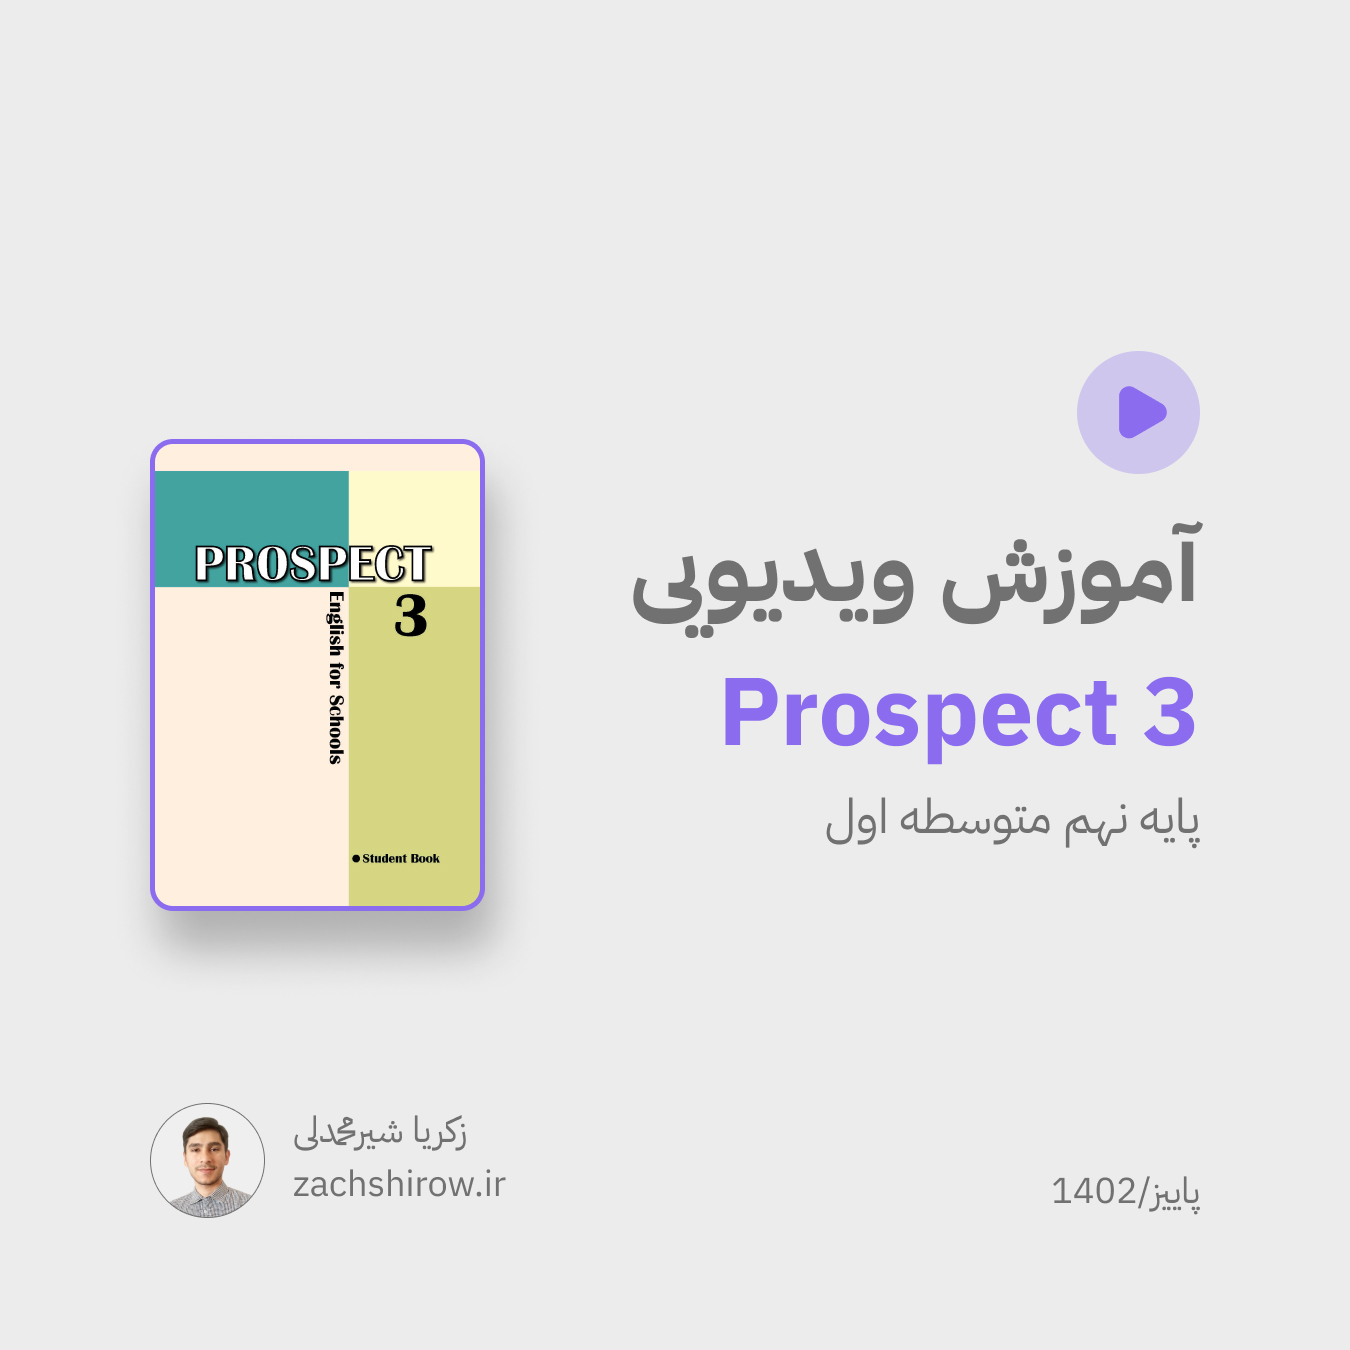 آموزش ویدیویی کتاب prospect 3